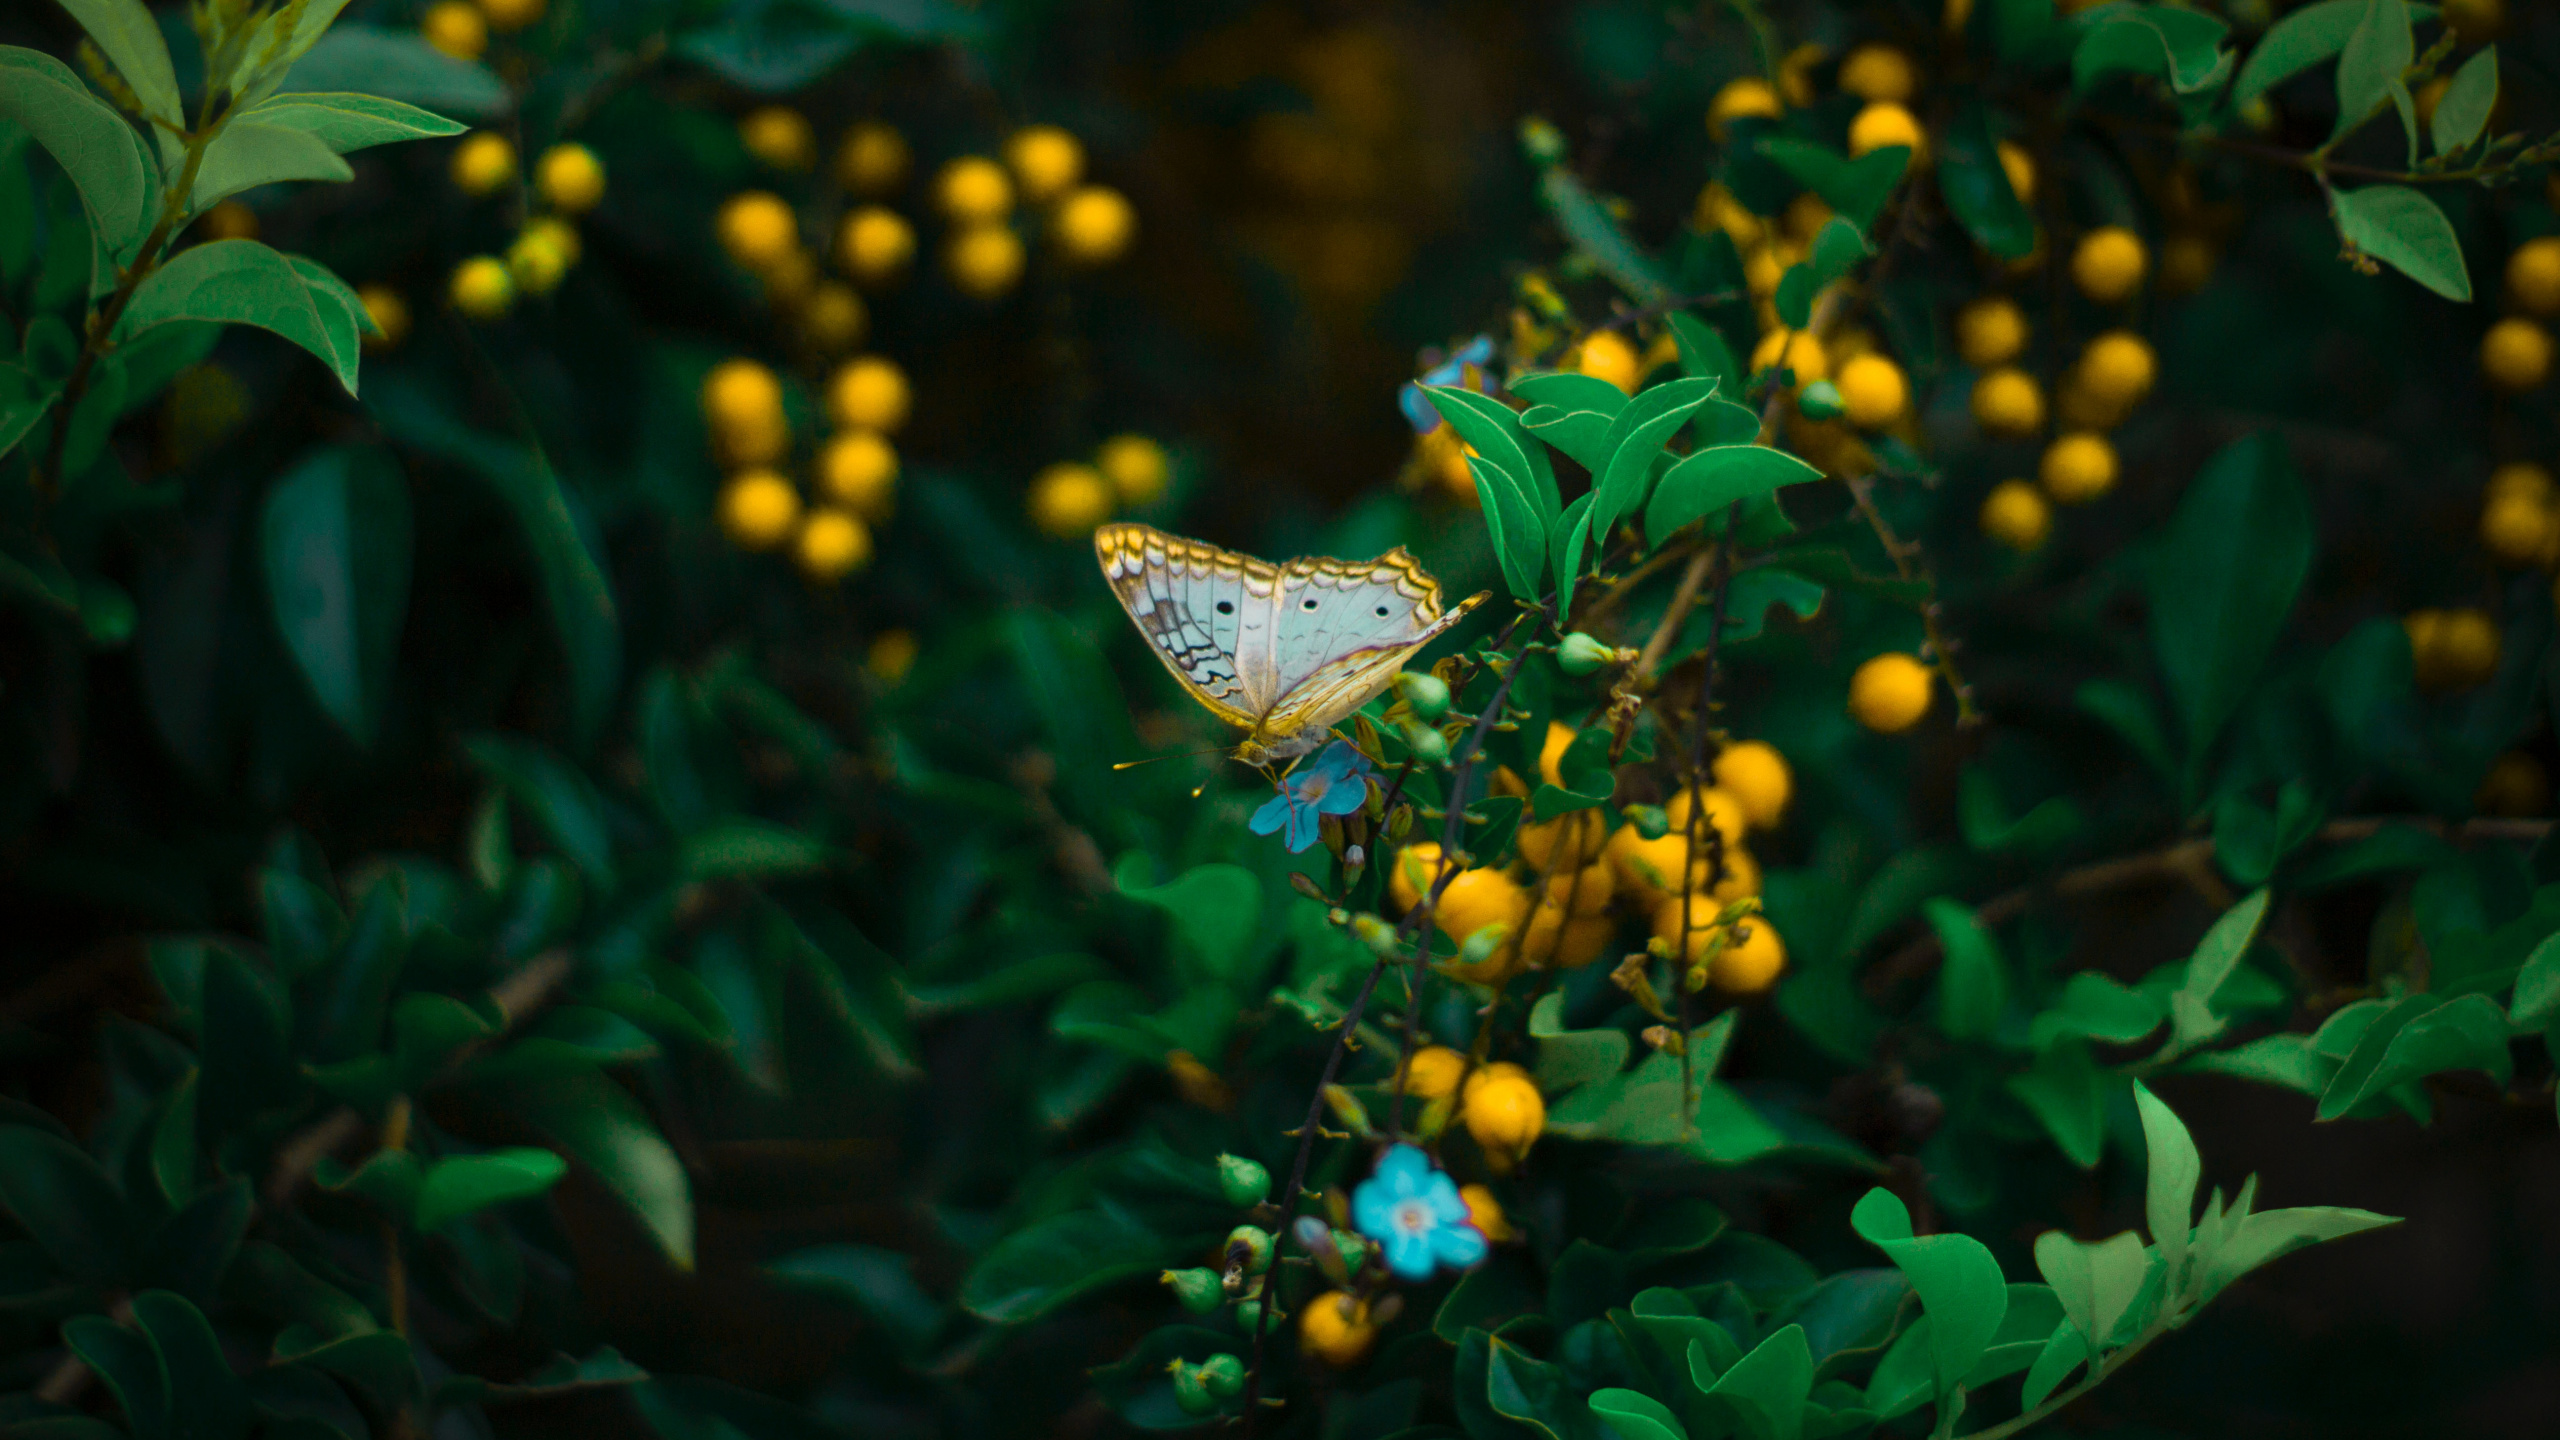 辛西娅亚属, 绿色的, 昆虫, 飞蛾和蝴蝶, 黄色的 壁纸 2560x1440 允许